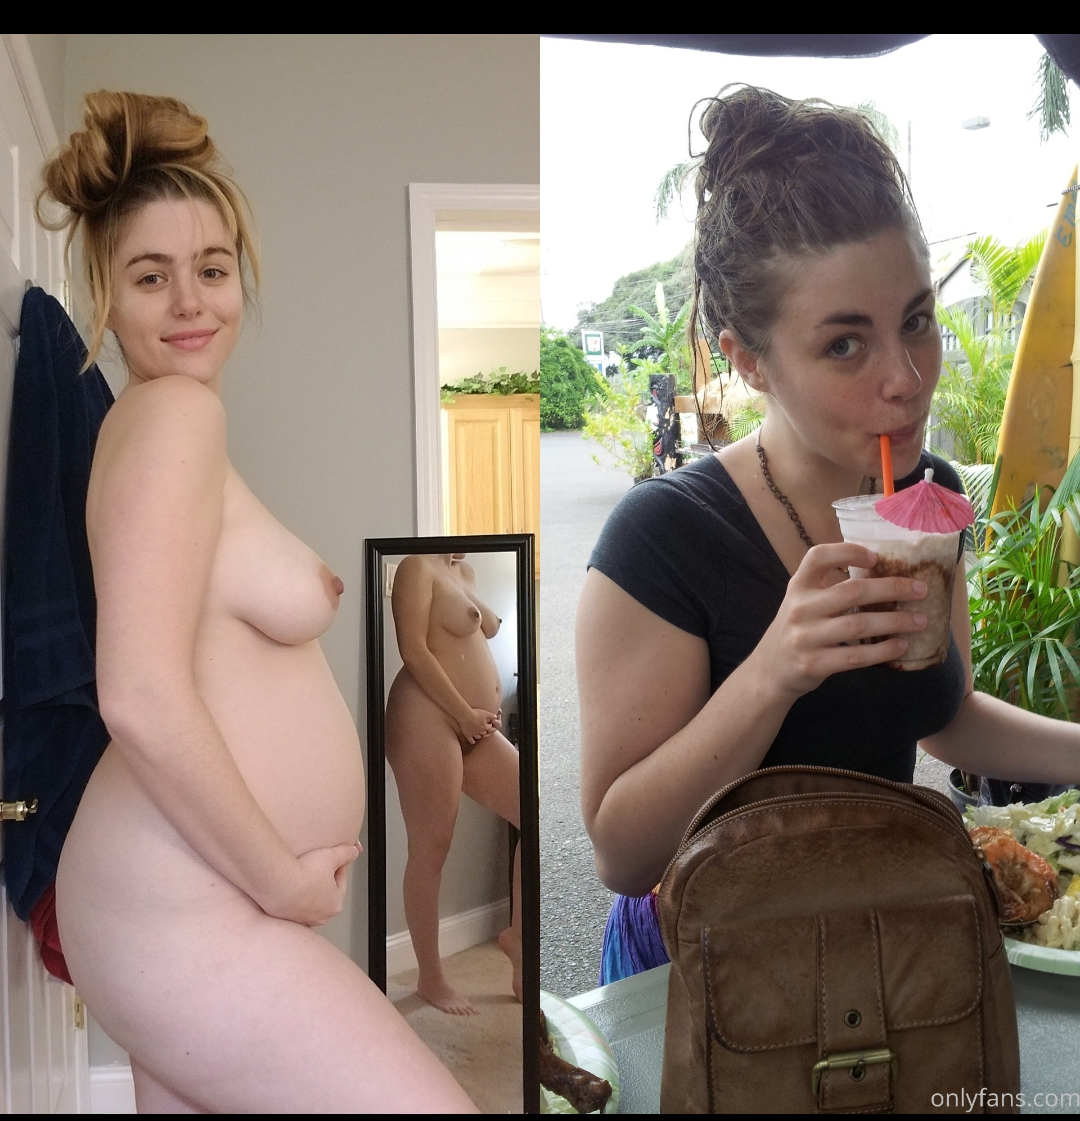 Pregnant Busty Porn - Pregnant busty whore - Porn Videos & Photos - EroMe